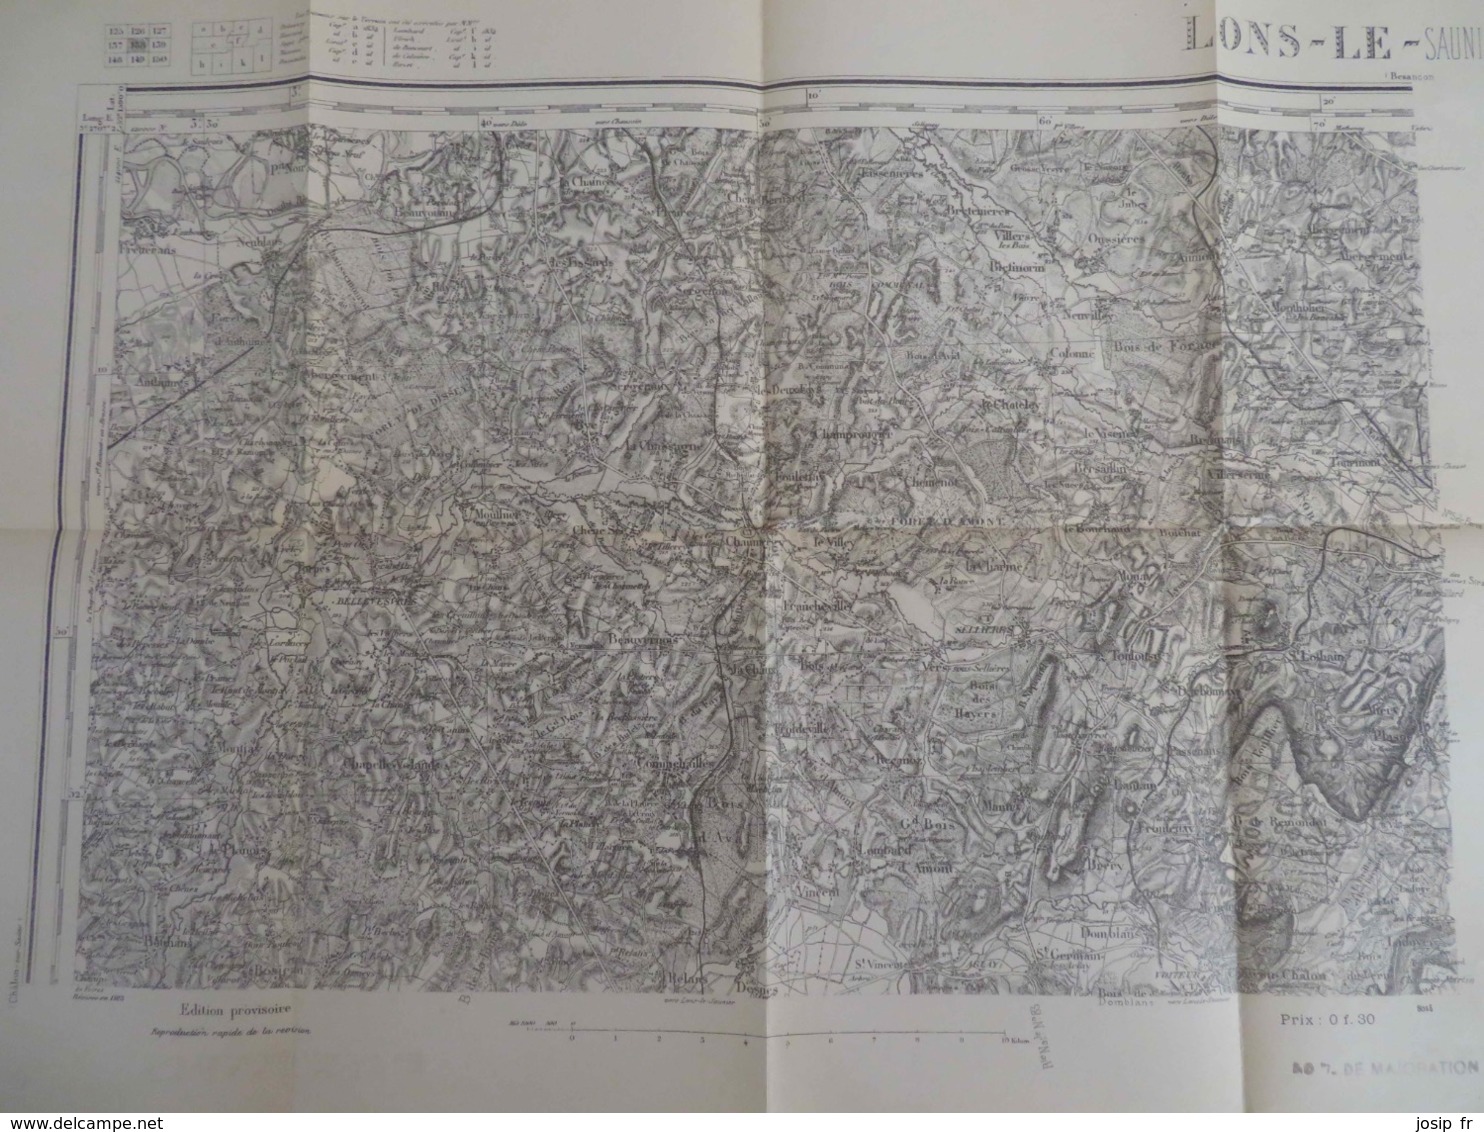 CARTE D'ETAT-MAJOR LONS-LE-SAUNIER NORD-OUEST 1/80000- TYPE 1889 RÉVISÉE 1913- - Topographische Karten